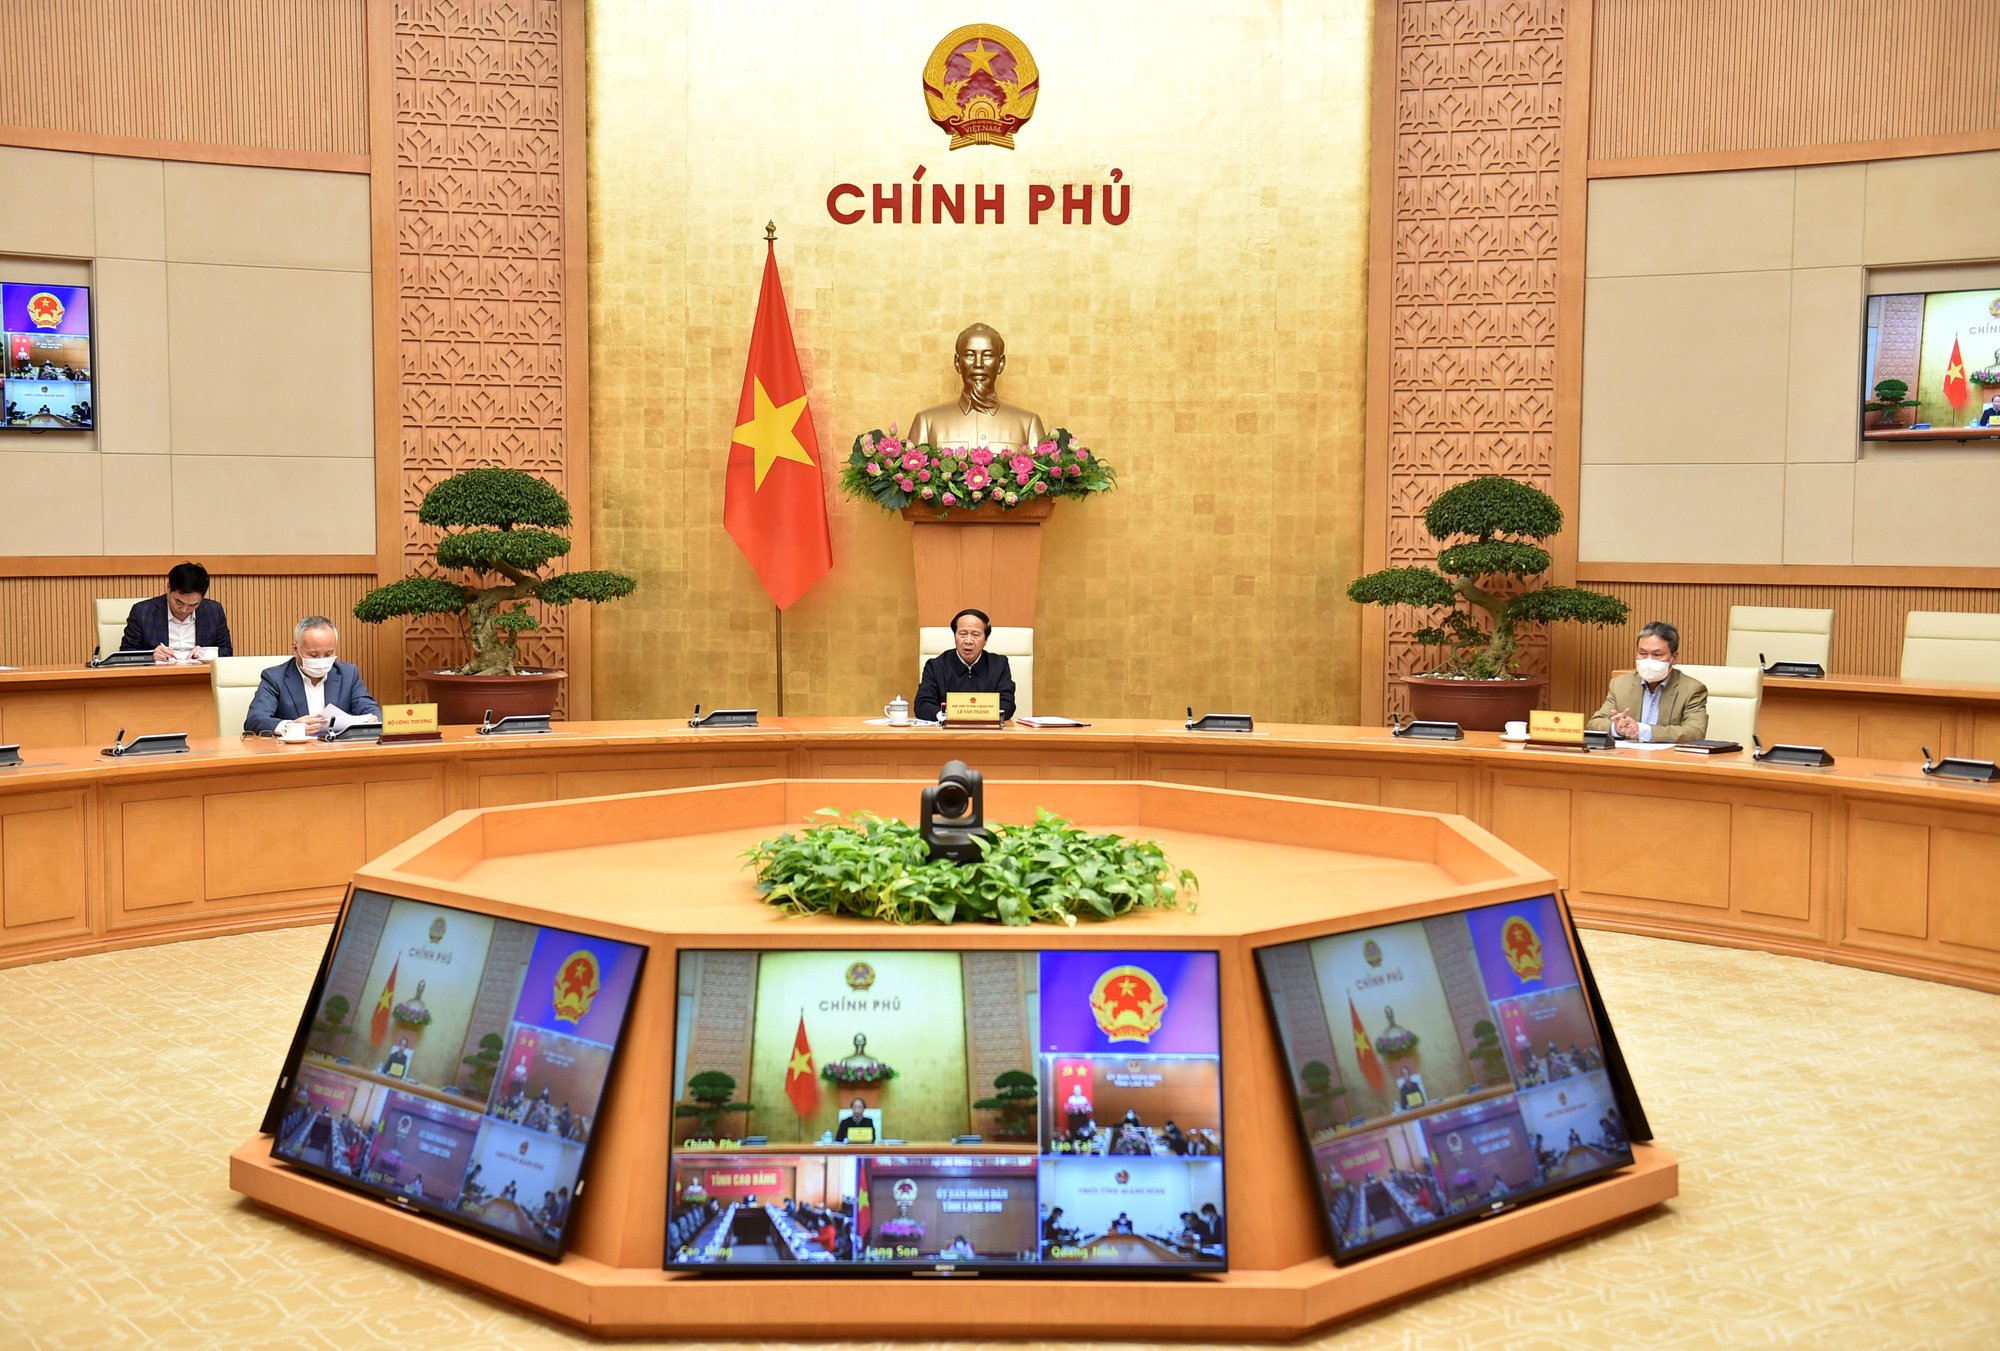 Phó Thủ tướng Lê Văn Thành chủ trì họp trực tuyến với các bộ, địa phương liên quan về tình hình xử lý hàng hóa ùn tắc tại các cửa khẩu phía Bắc.